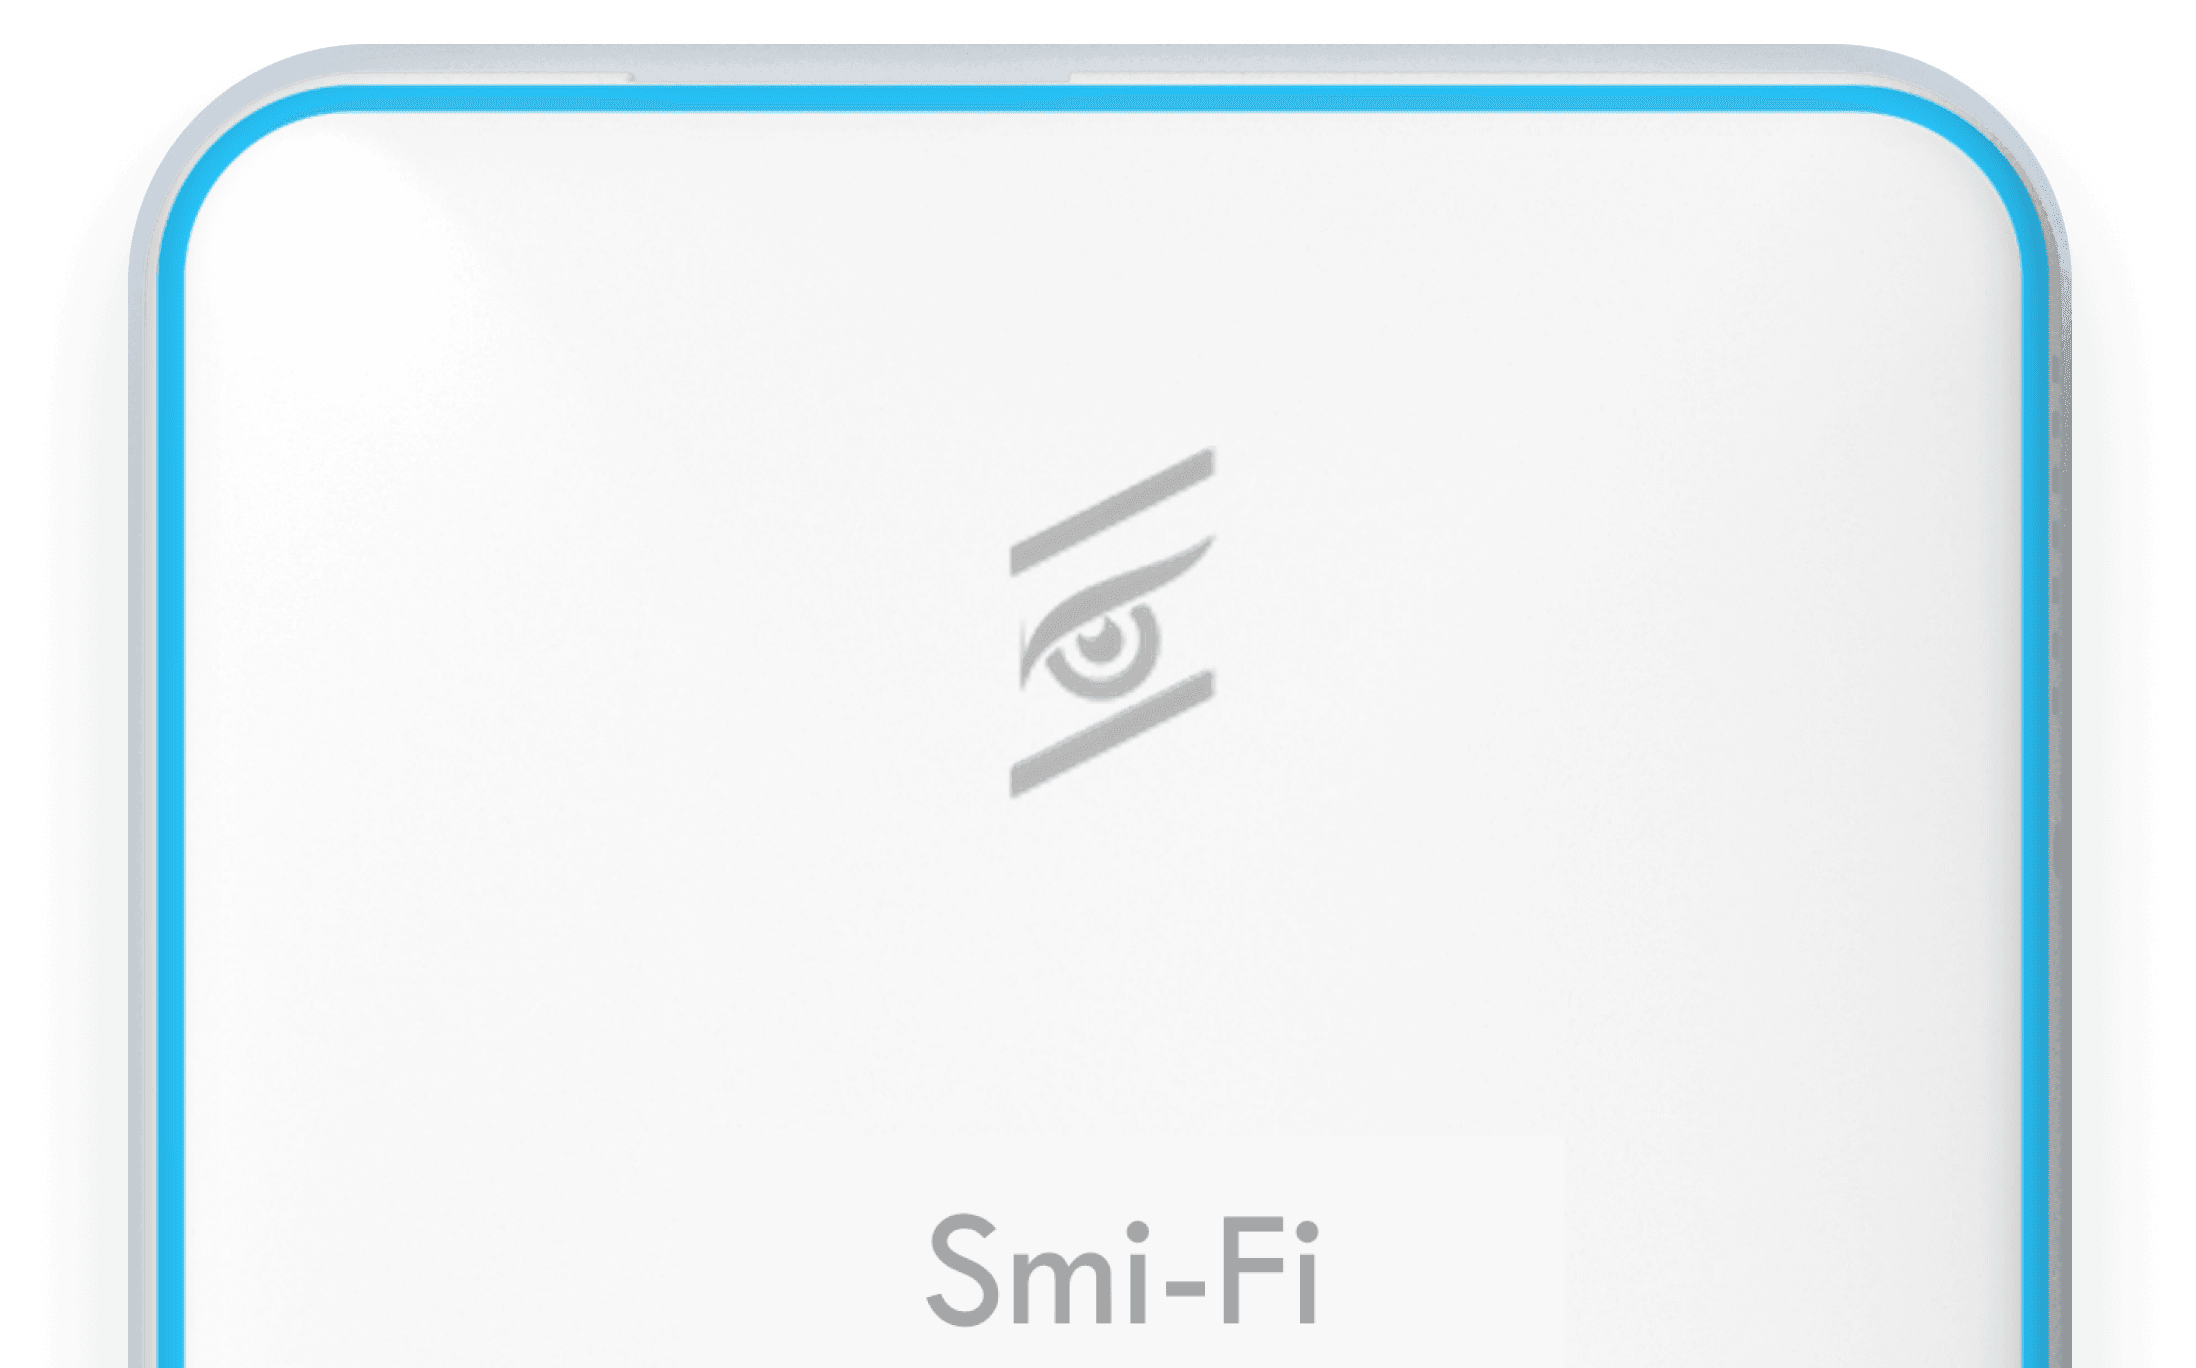 Smifi_Picture_half image